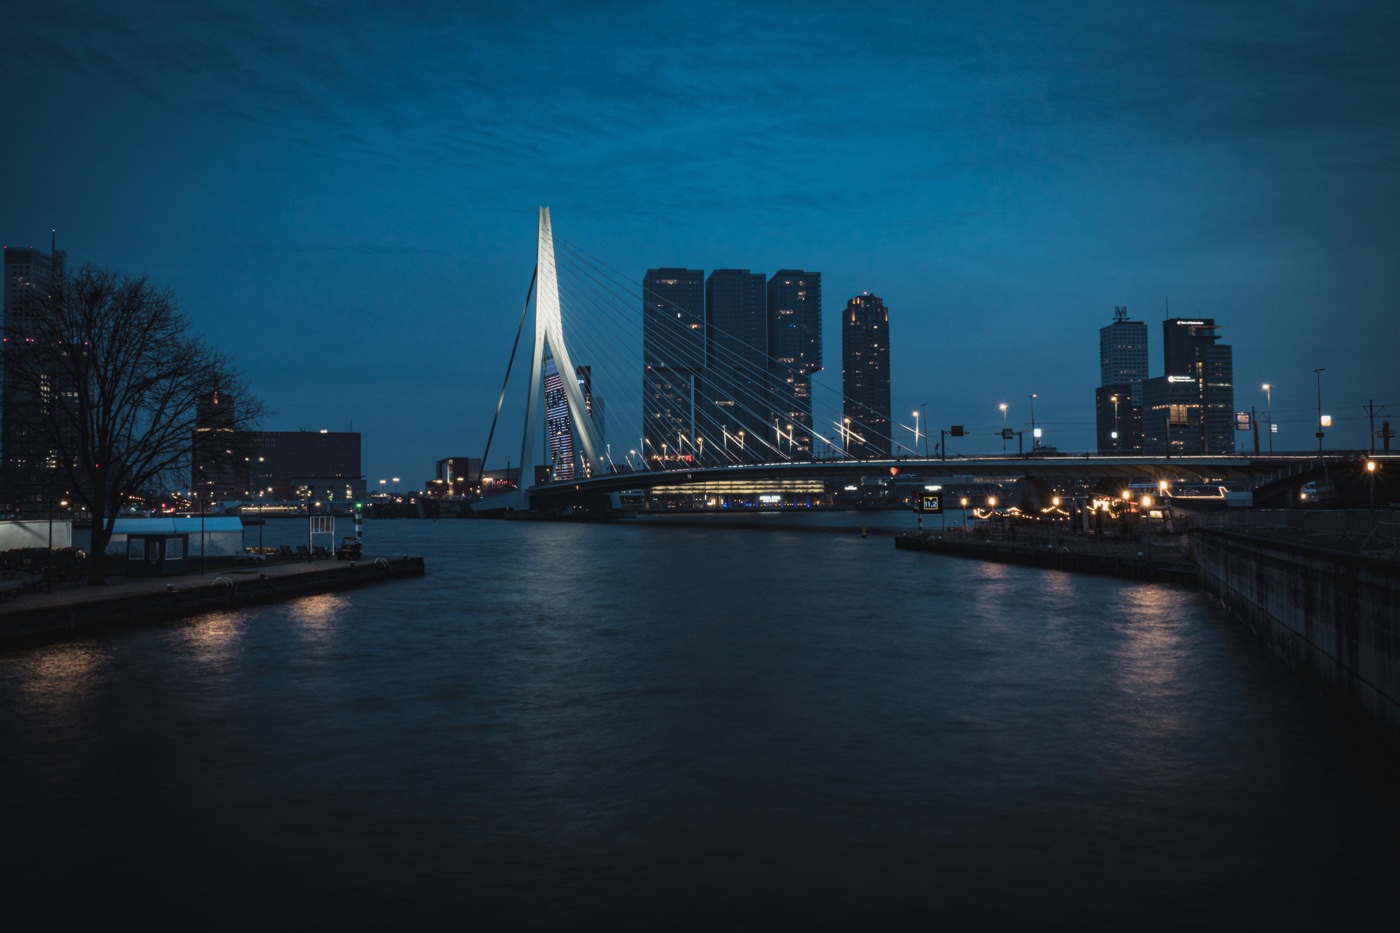 Rotterdam at night by JoÃ«l de Vriend